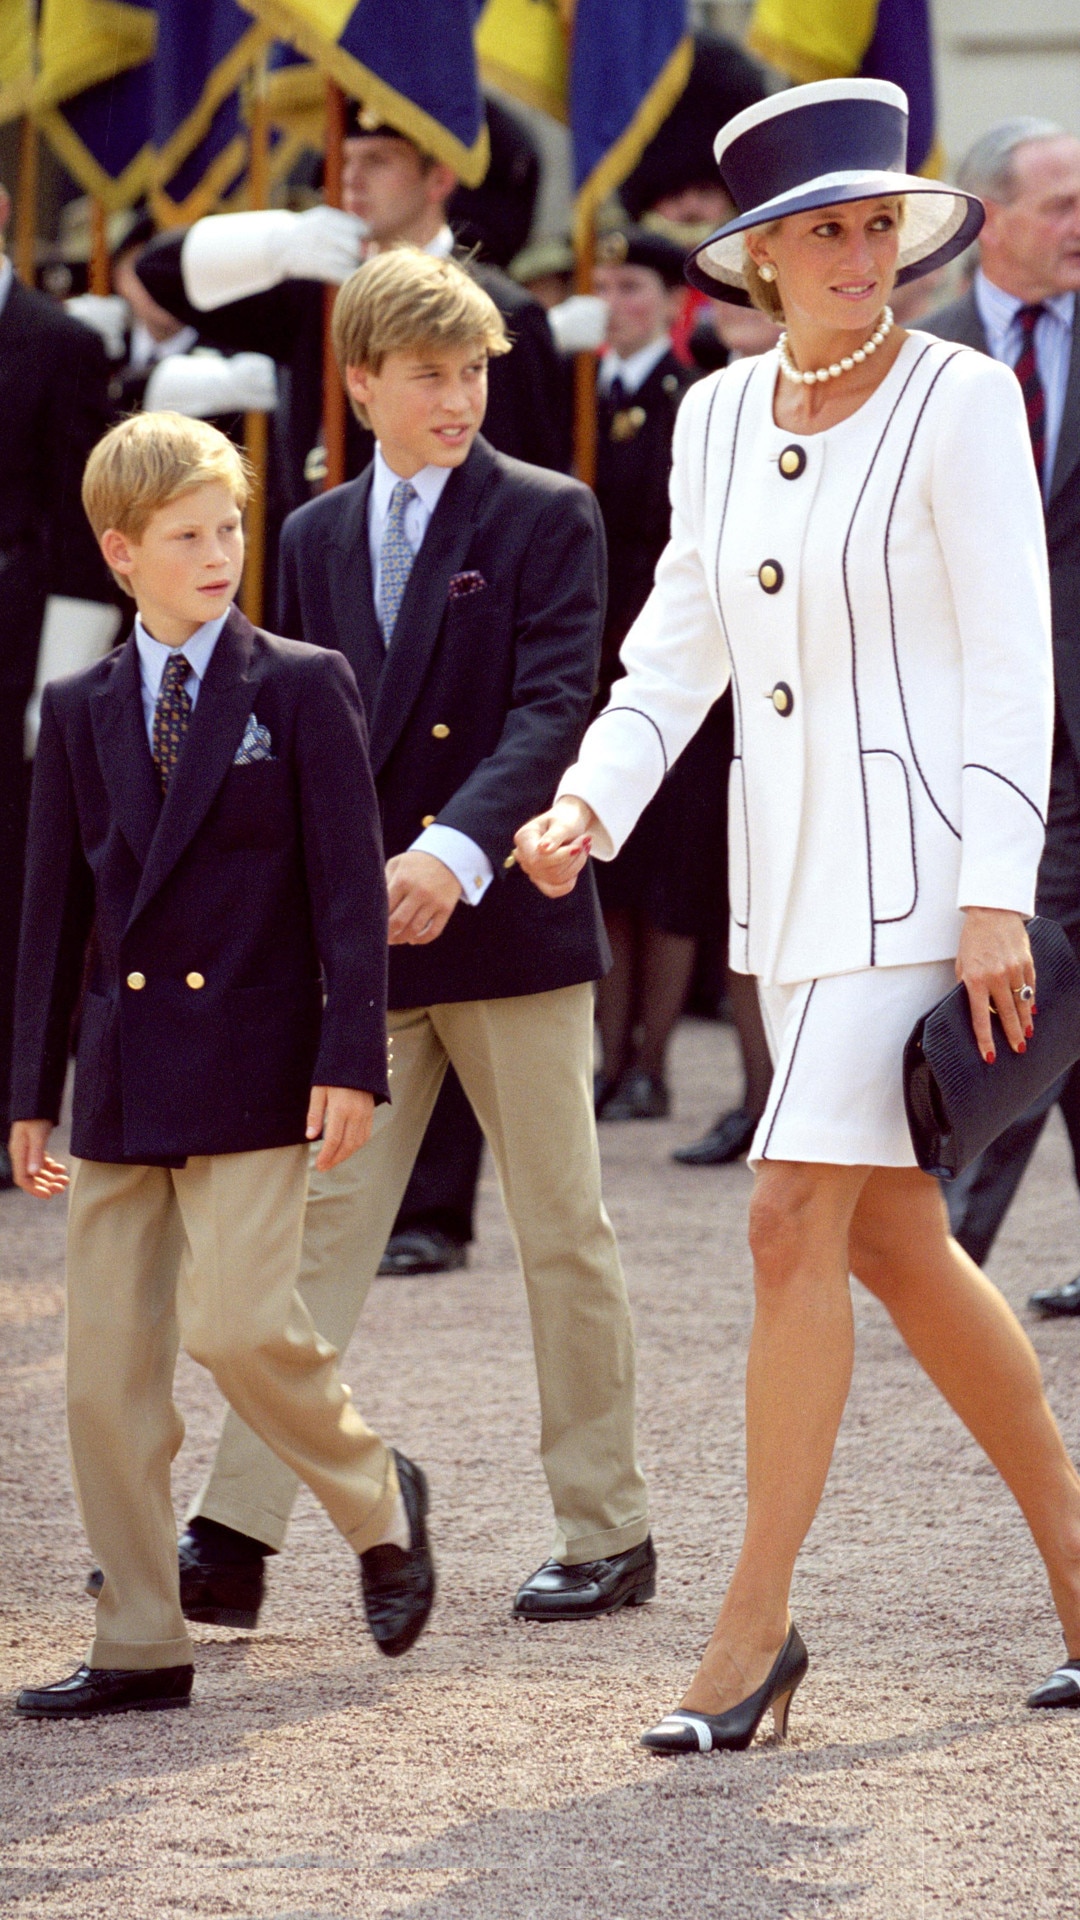 Prince William, Princess Diana, Prince Harry